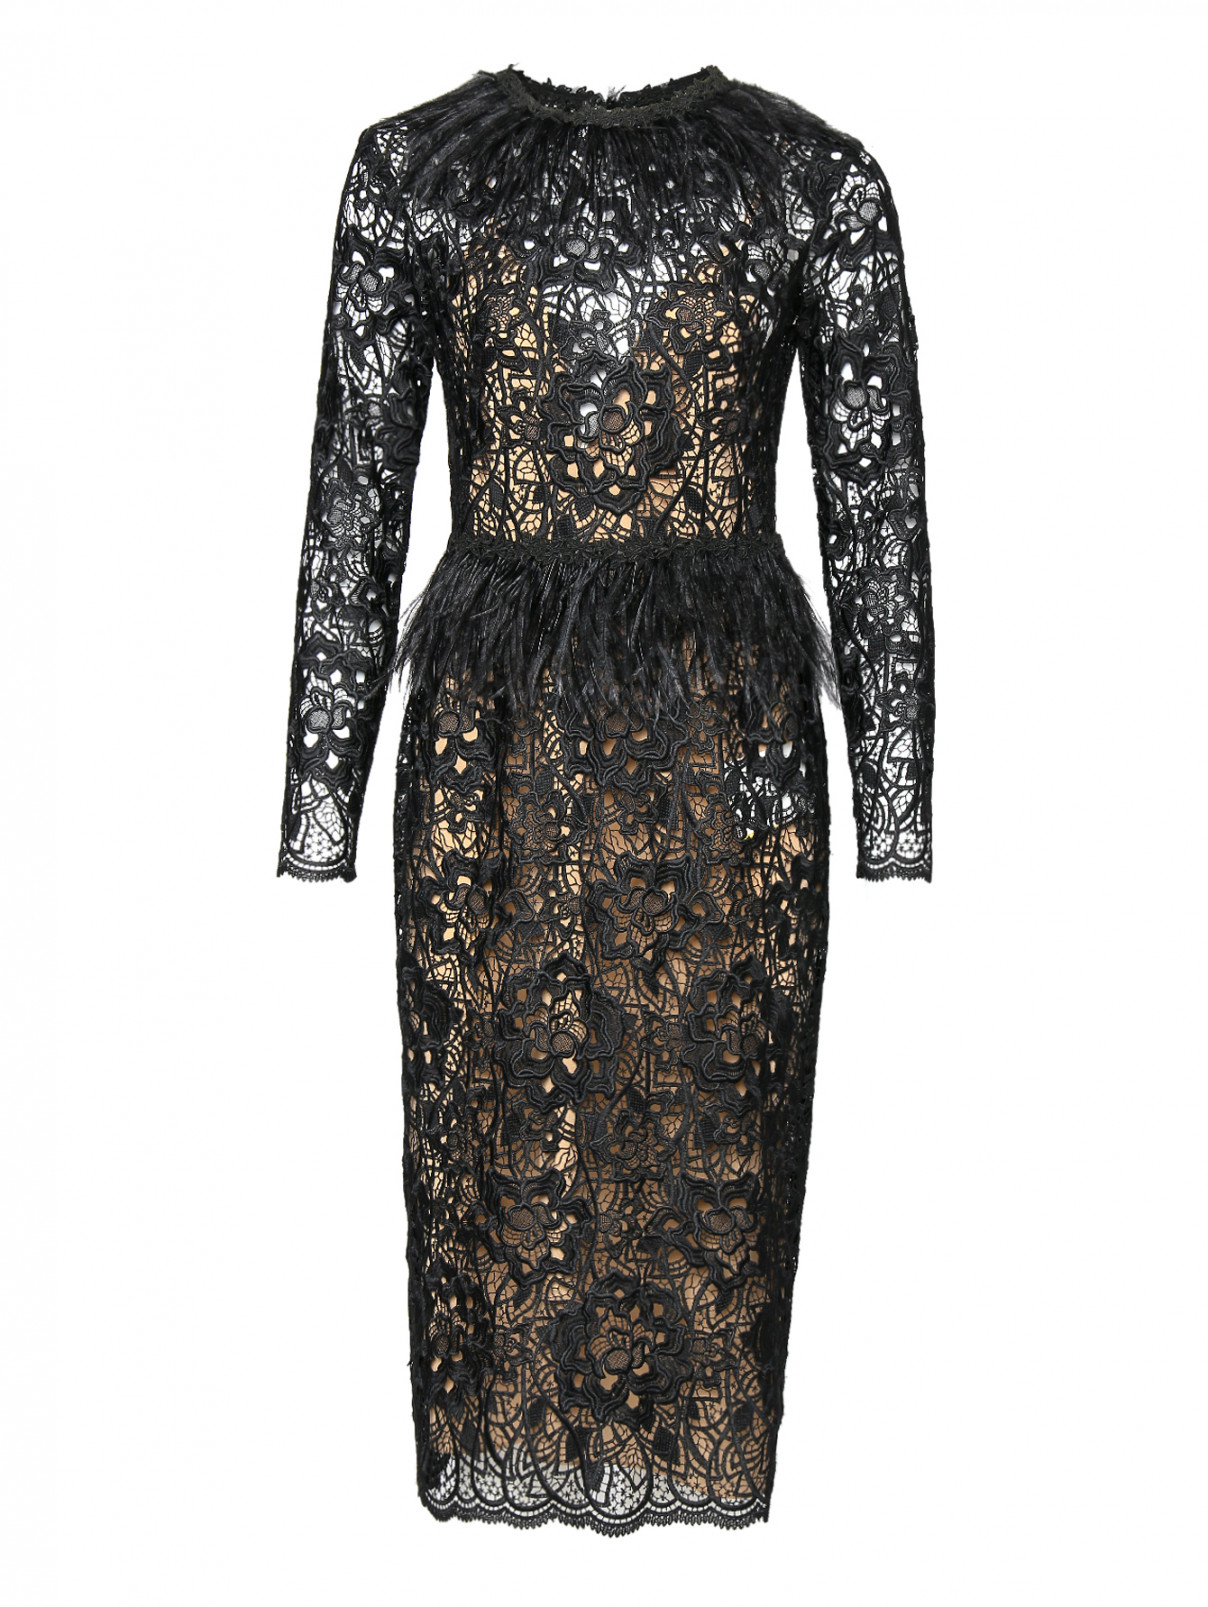 Платье из кружева декорированное перьями Zuhair Murad  –  Общий вид  – Цвет:  Черный